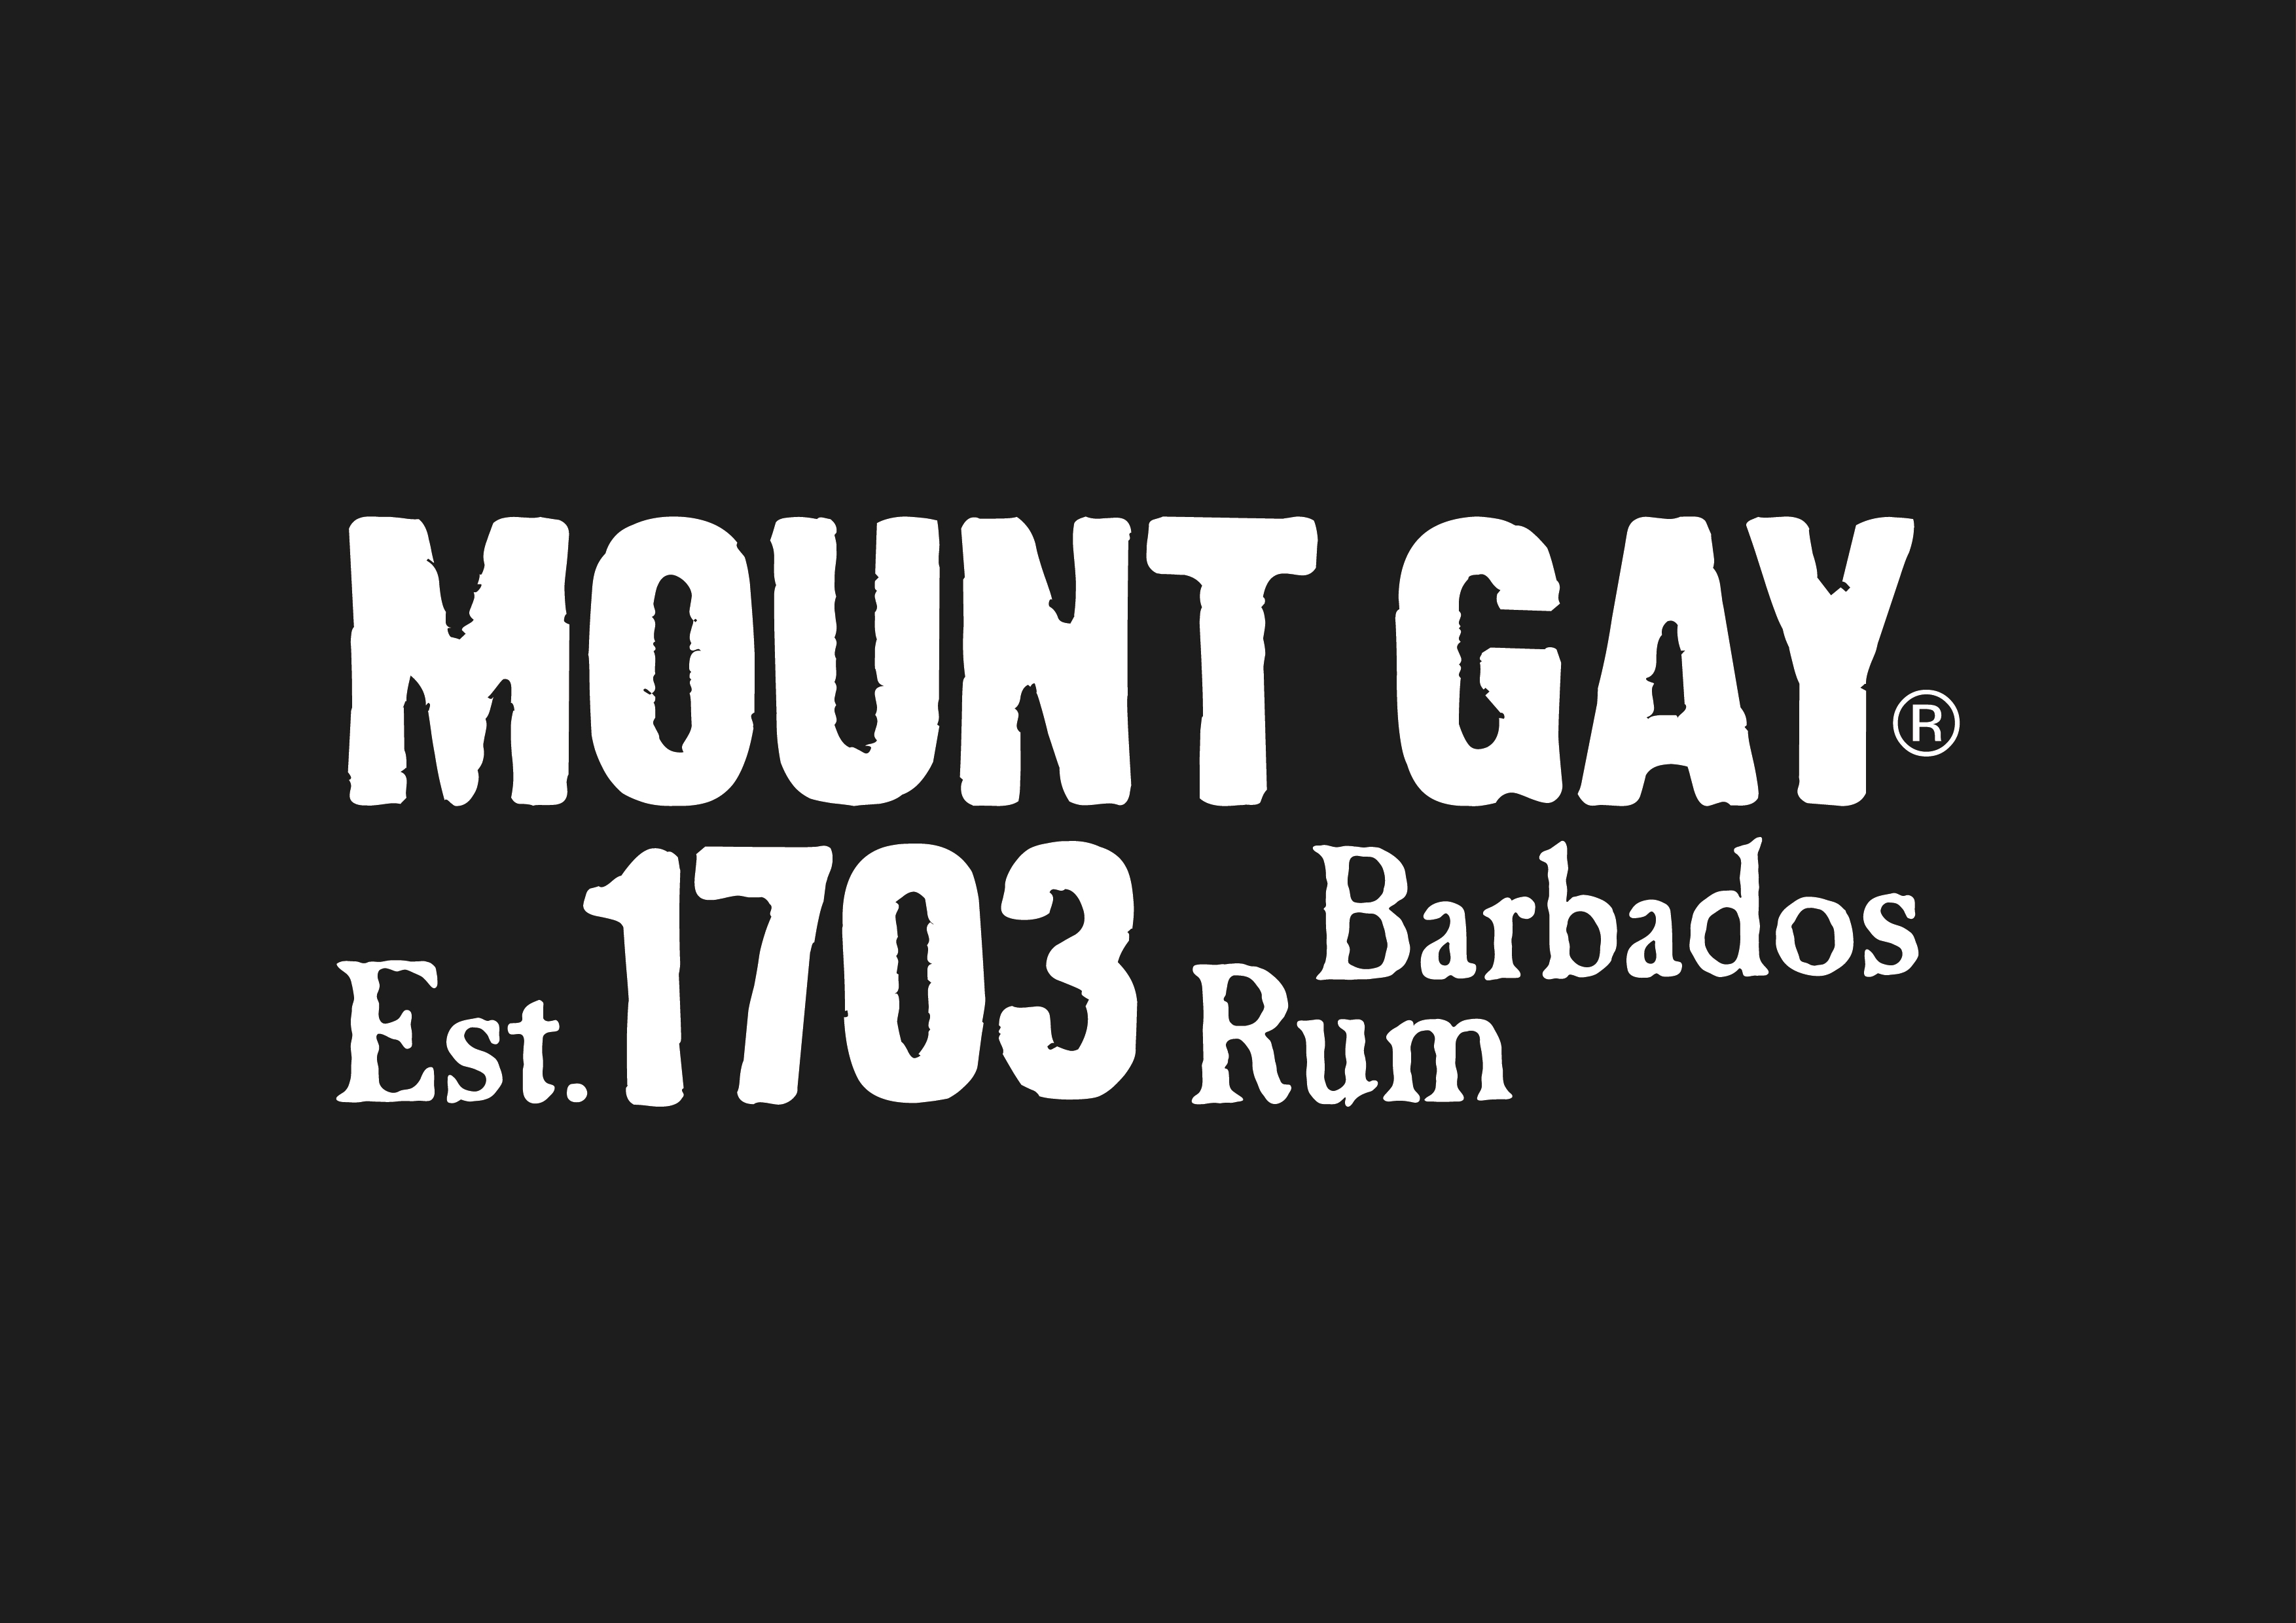 Mount Gay Rum Twitter Tasting